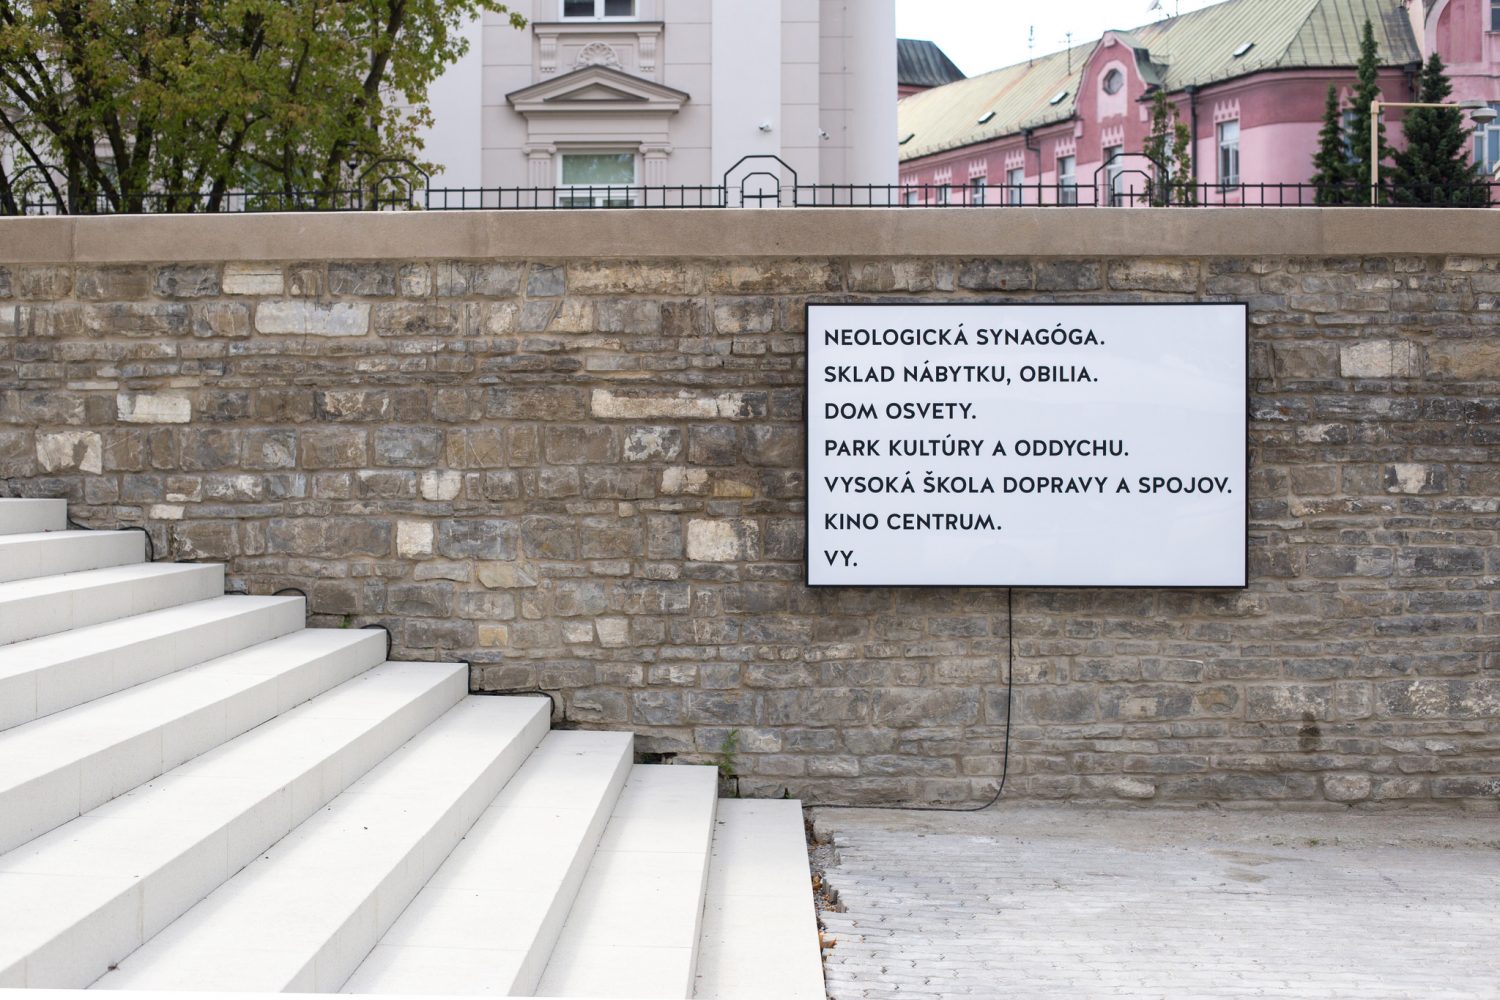 Obnova Neologickej synagógy v Žiline, 2011–2017